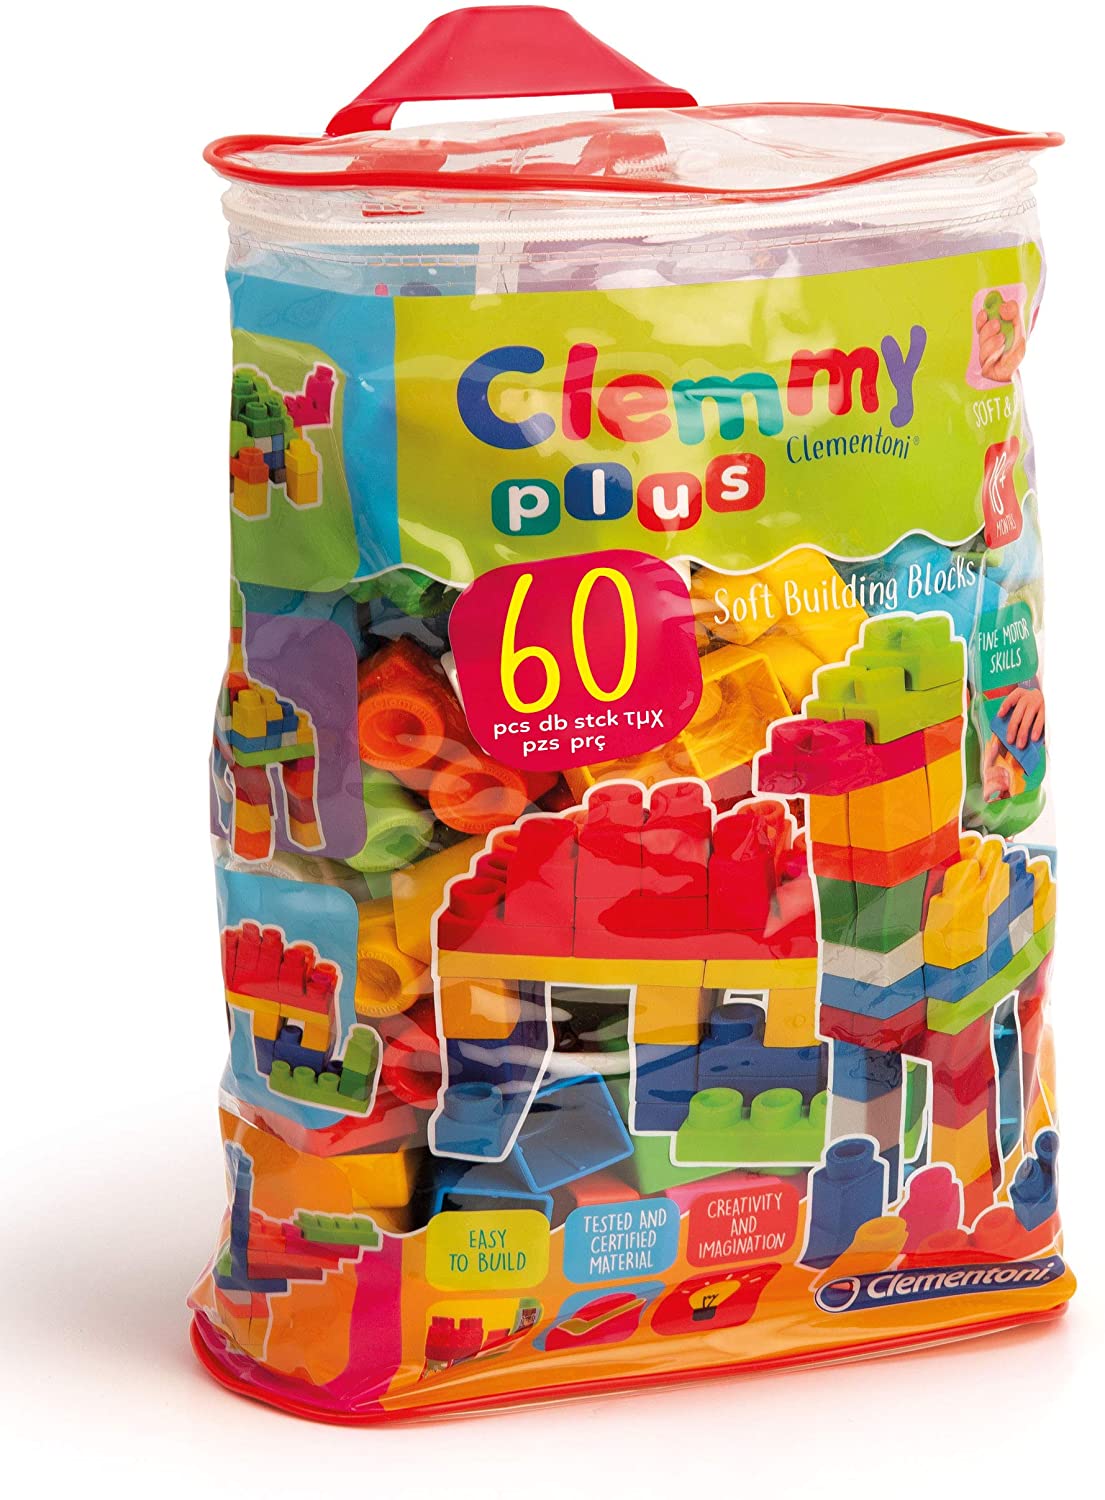 CLEMENTONI Clemmy Plus Bag 60 Pieces - Mod: CLM14880